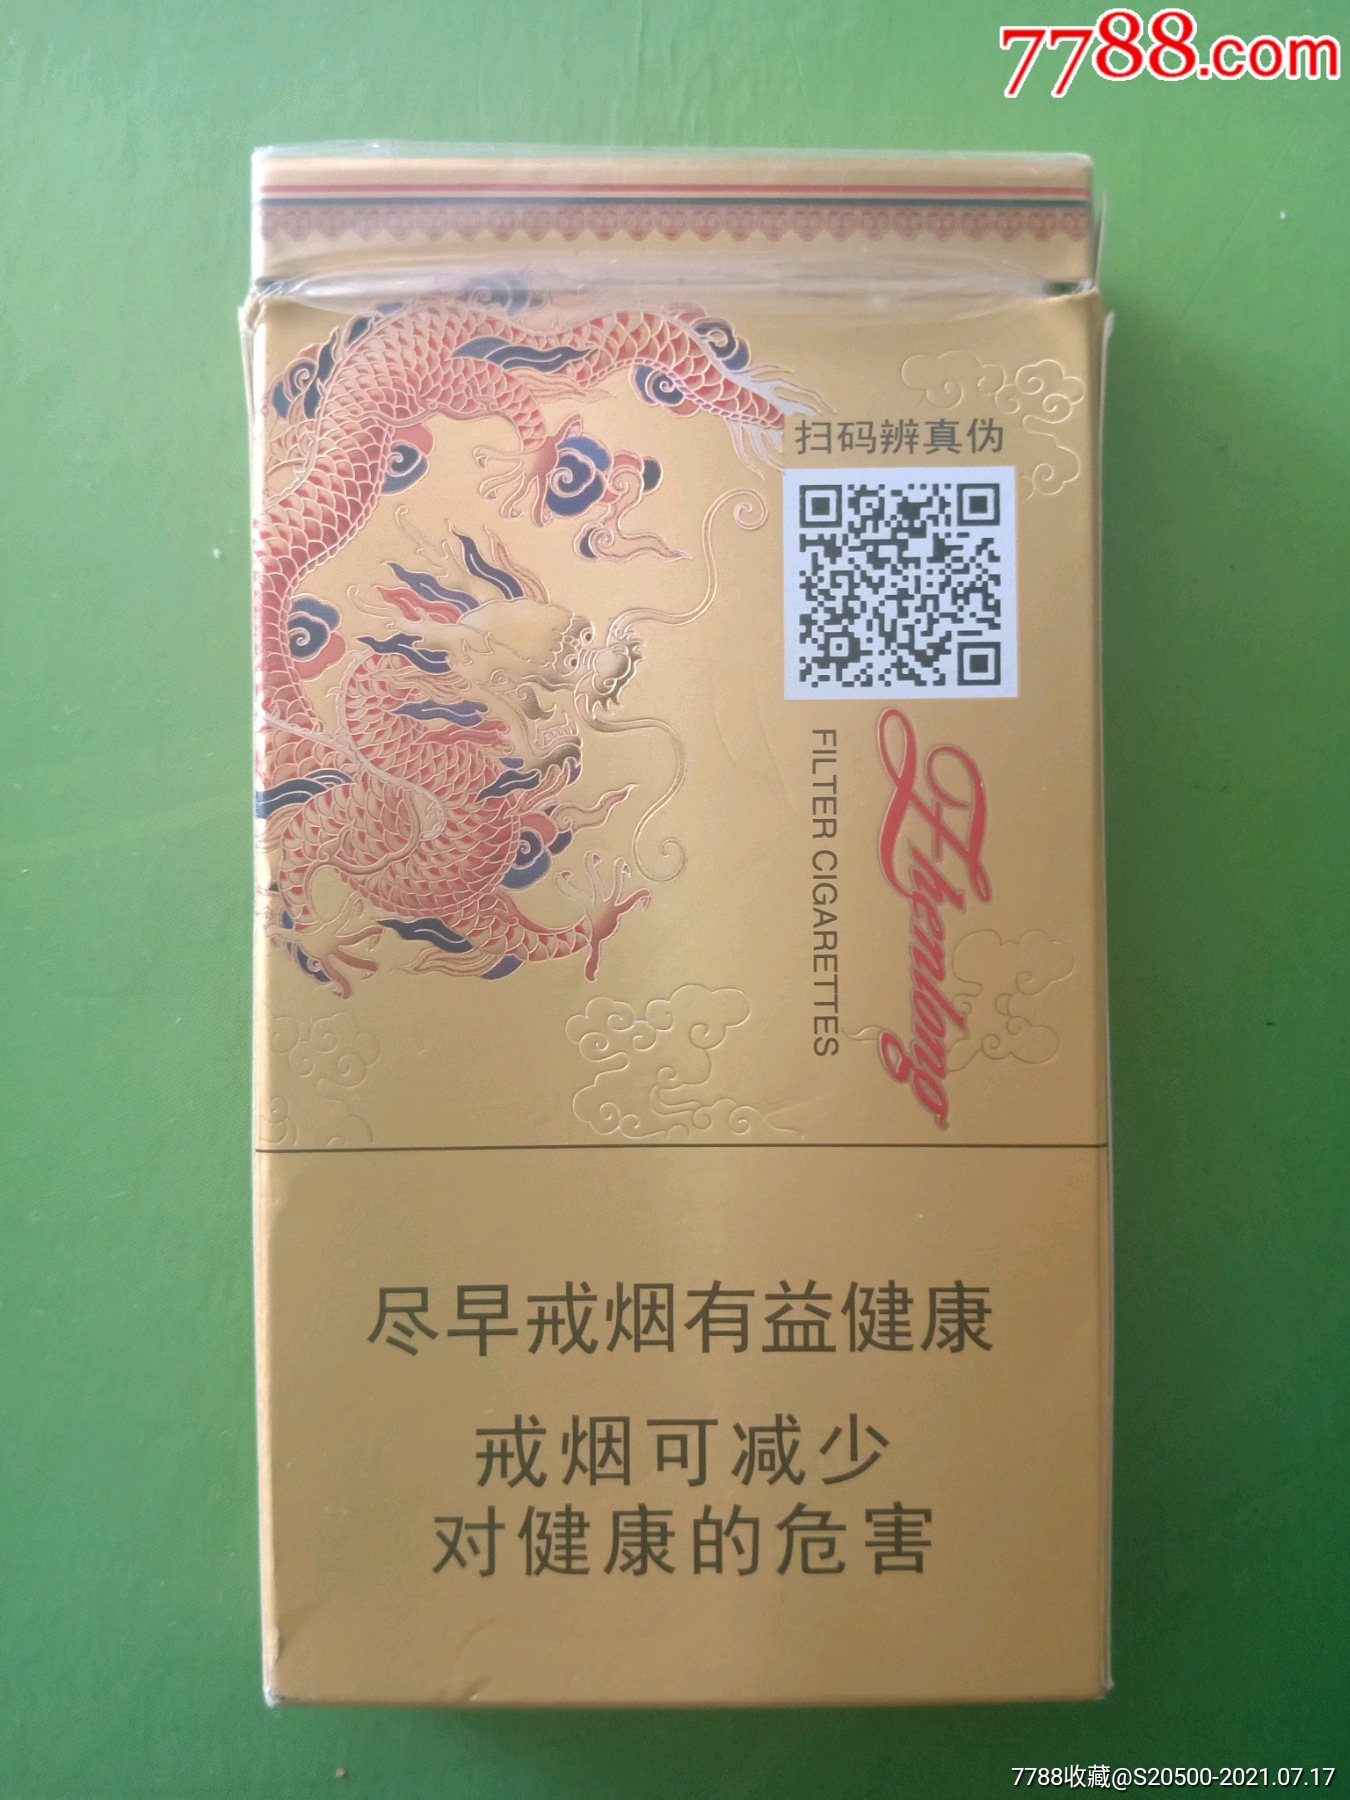 真龙凌云16尽早版011990焦油8mg广西中烟工业有限责任公司